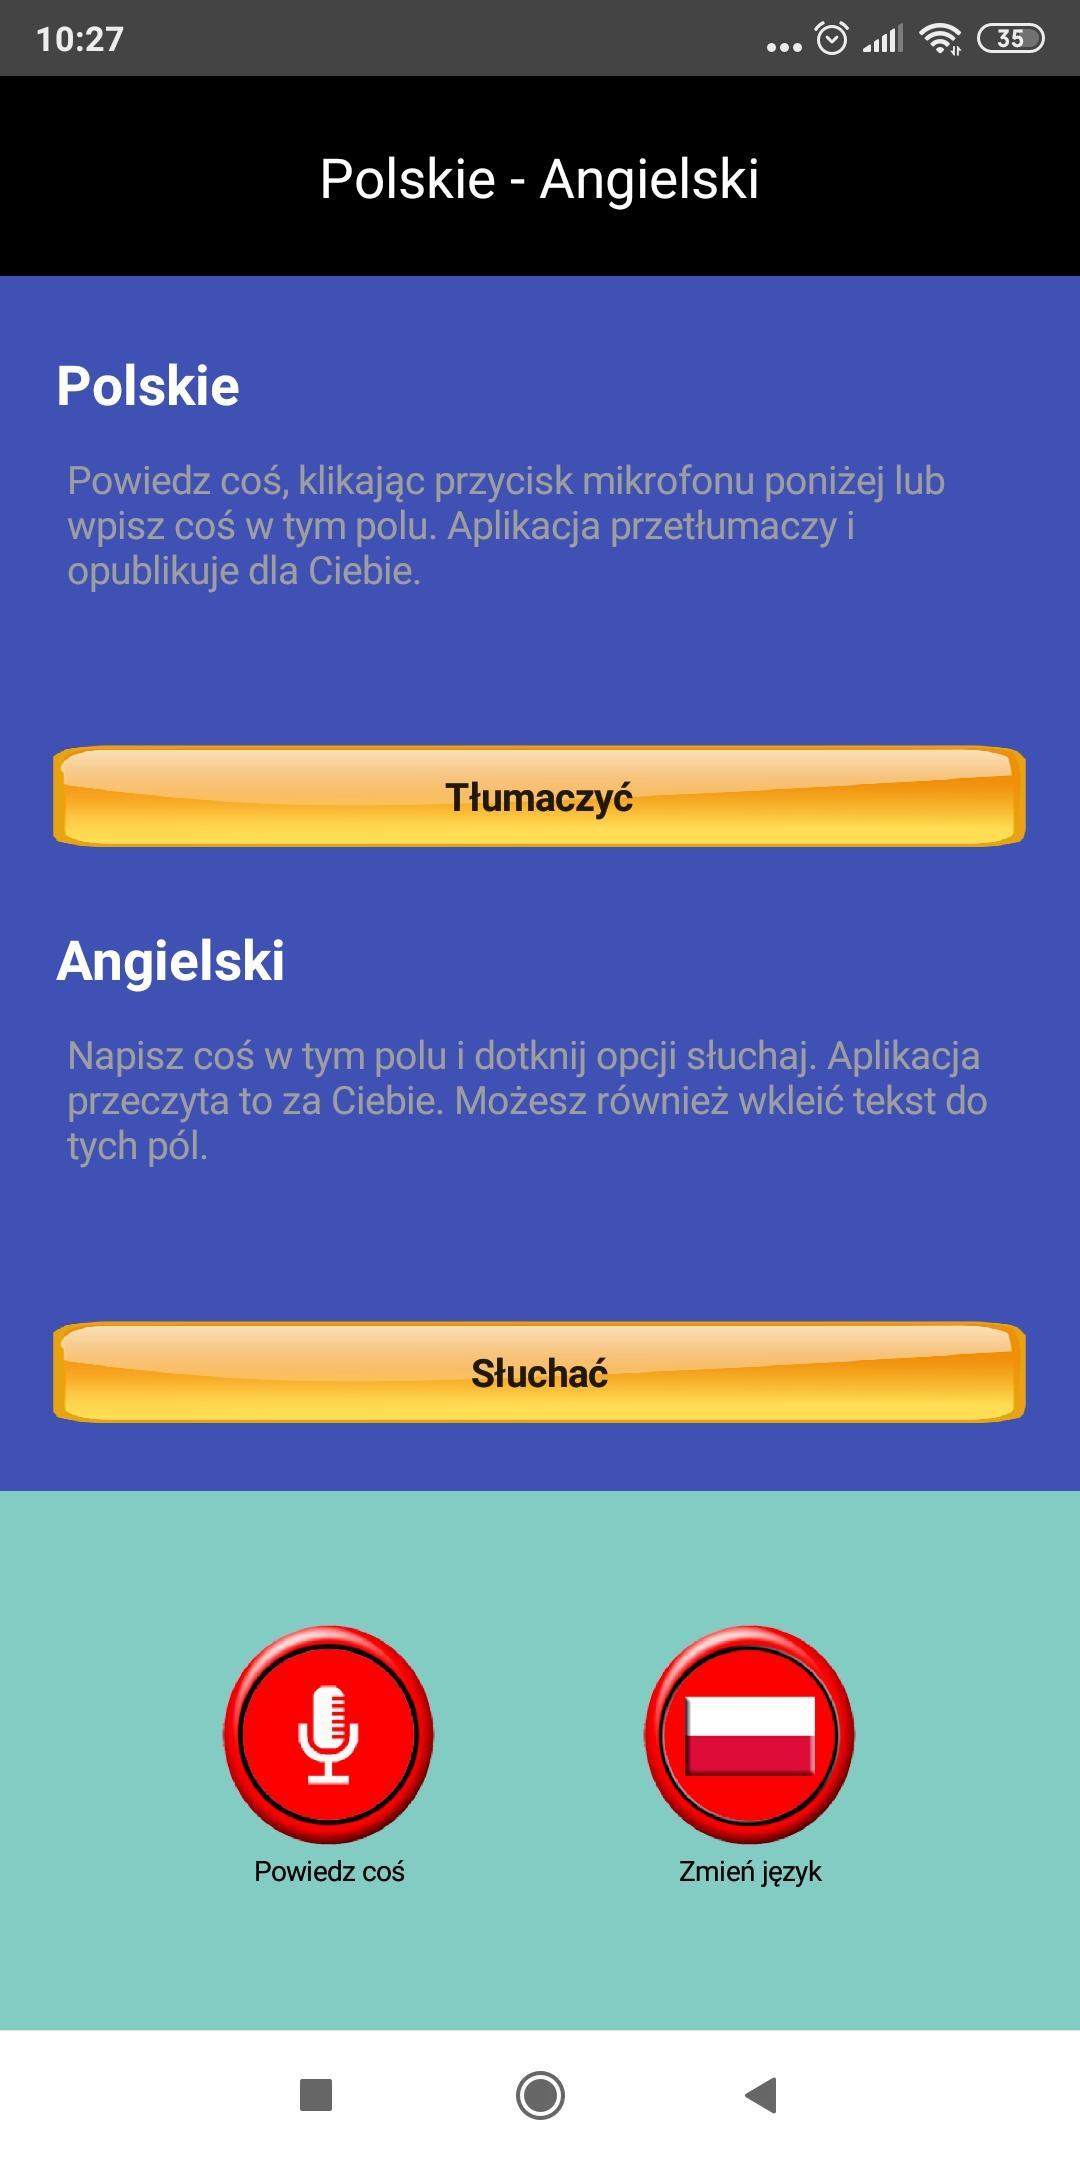 Przetłumacz głos na Angielski - Polski for Android - APK Download